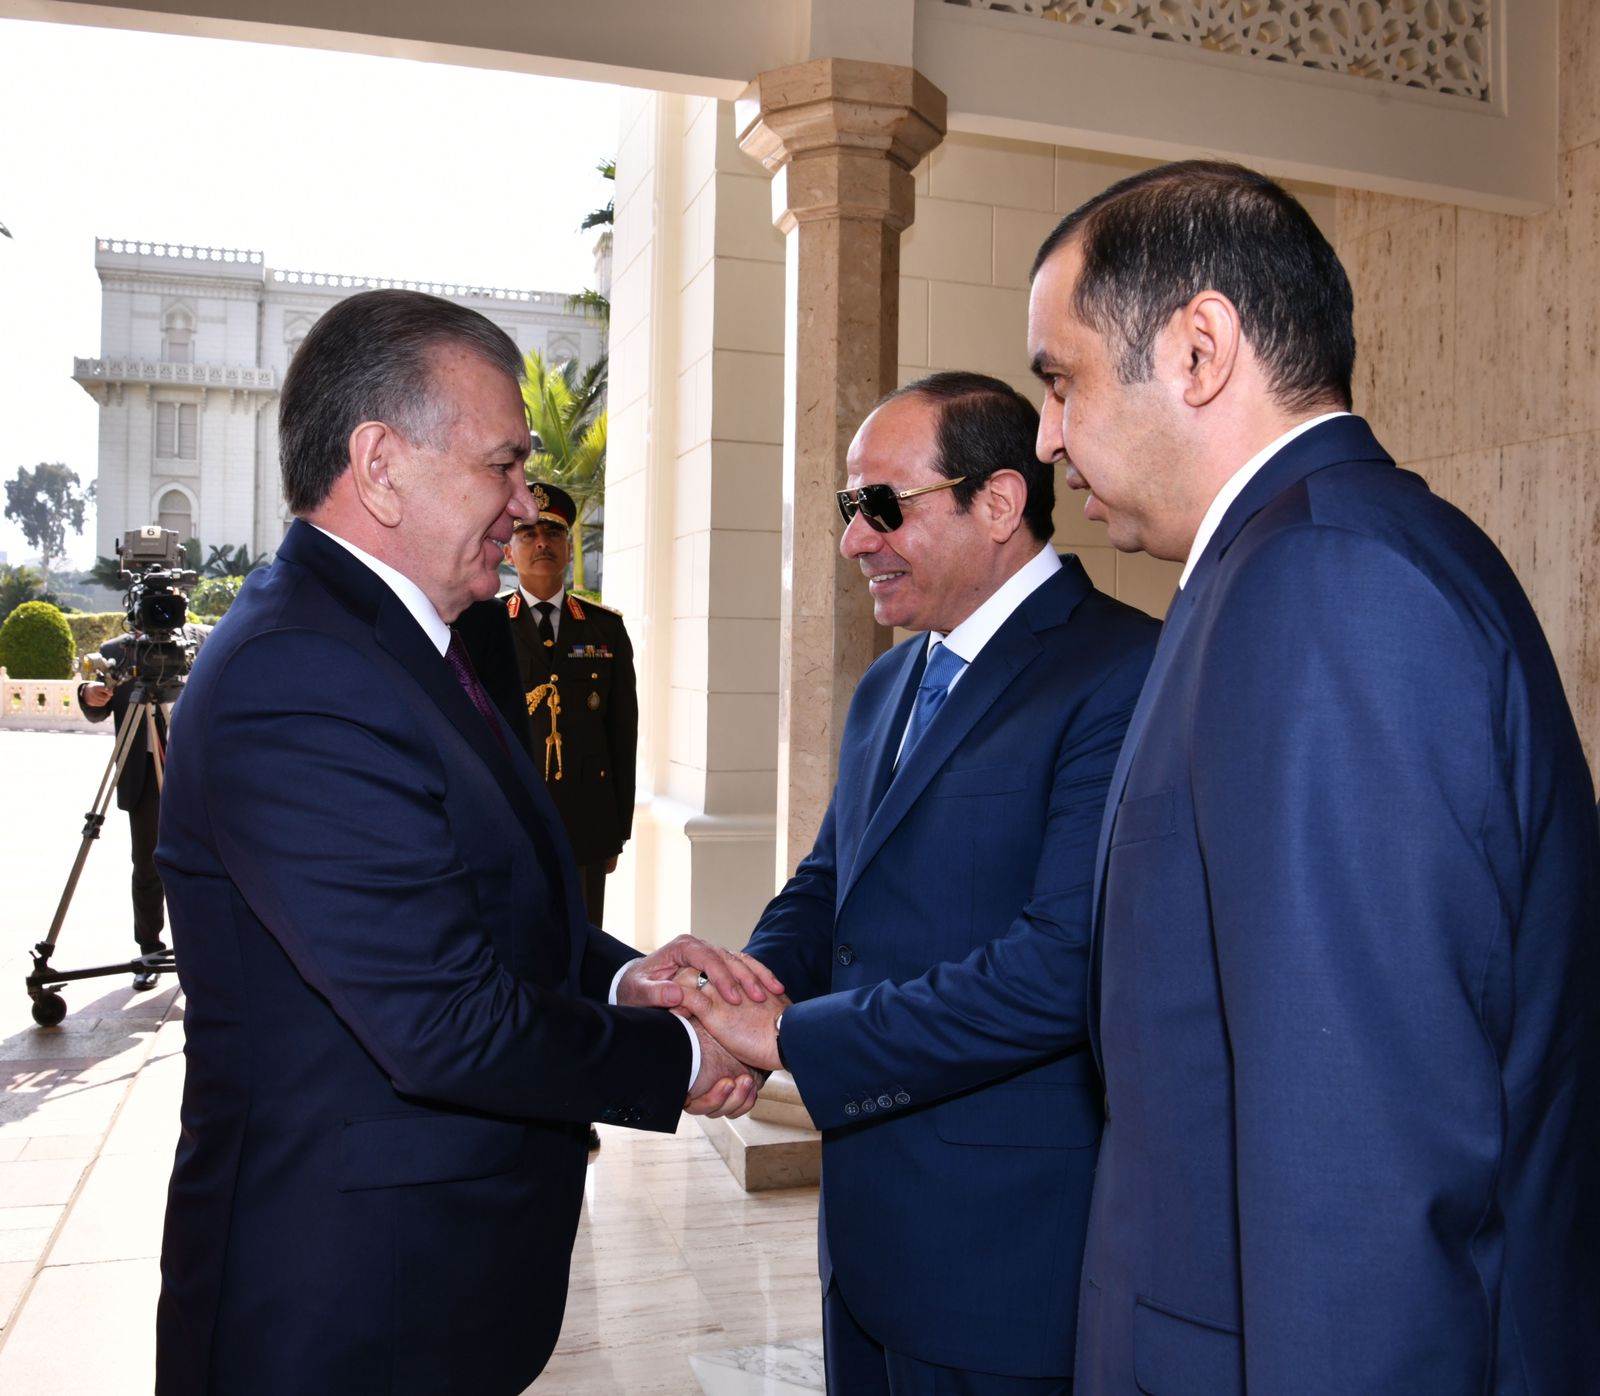  الرئيس عبدالفتاح السيسي يرحب بالرئيس الأوزباكستاني شوكت ميرضيائيف